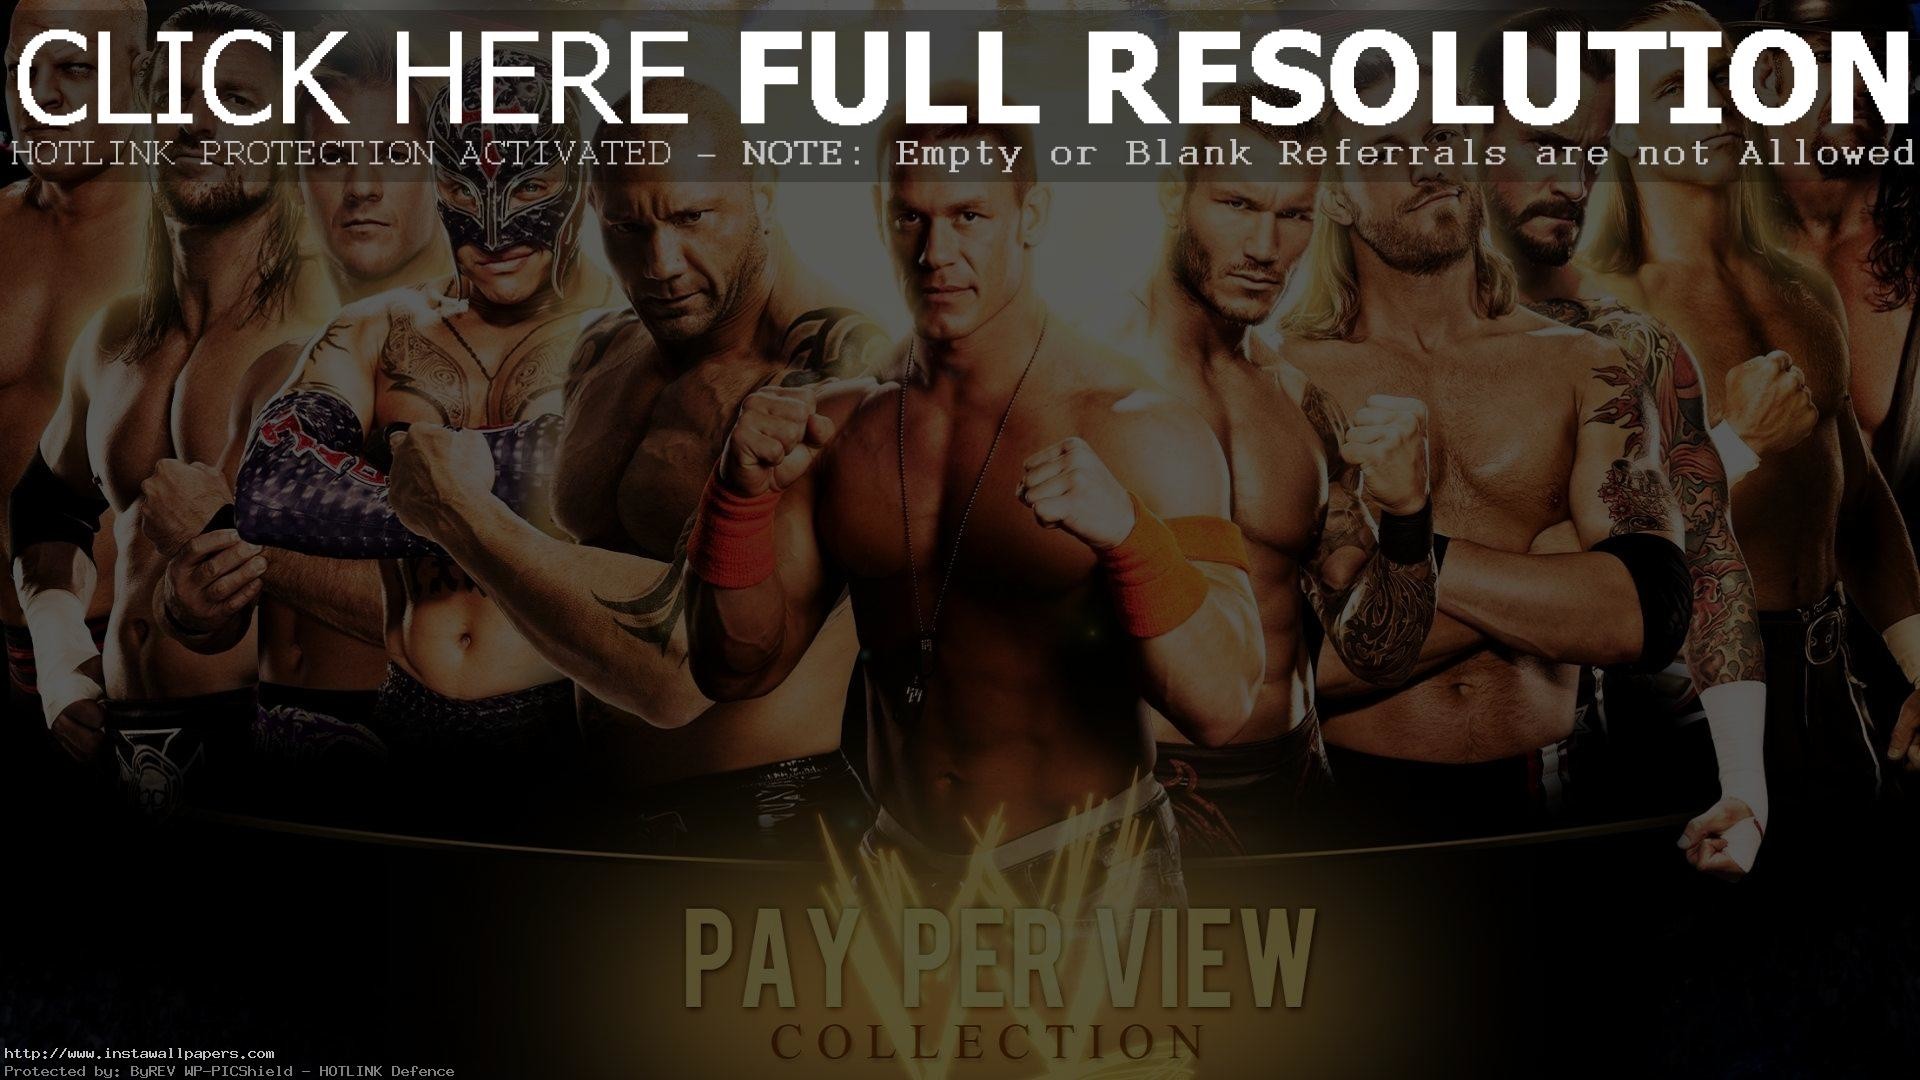 1920x1080 ... Wrestler wallpaper 3D 4K Fight WWE WWF wallpaper for Wrestler  background image for desktop Laptop iPhone